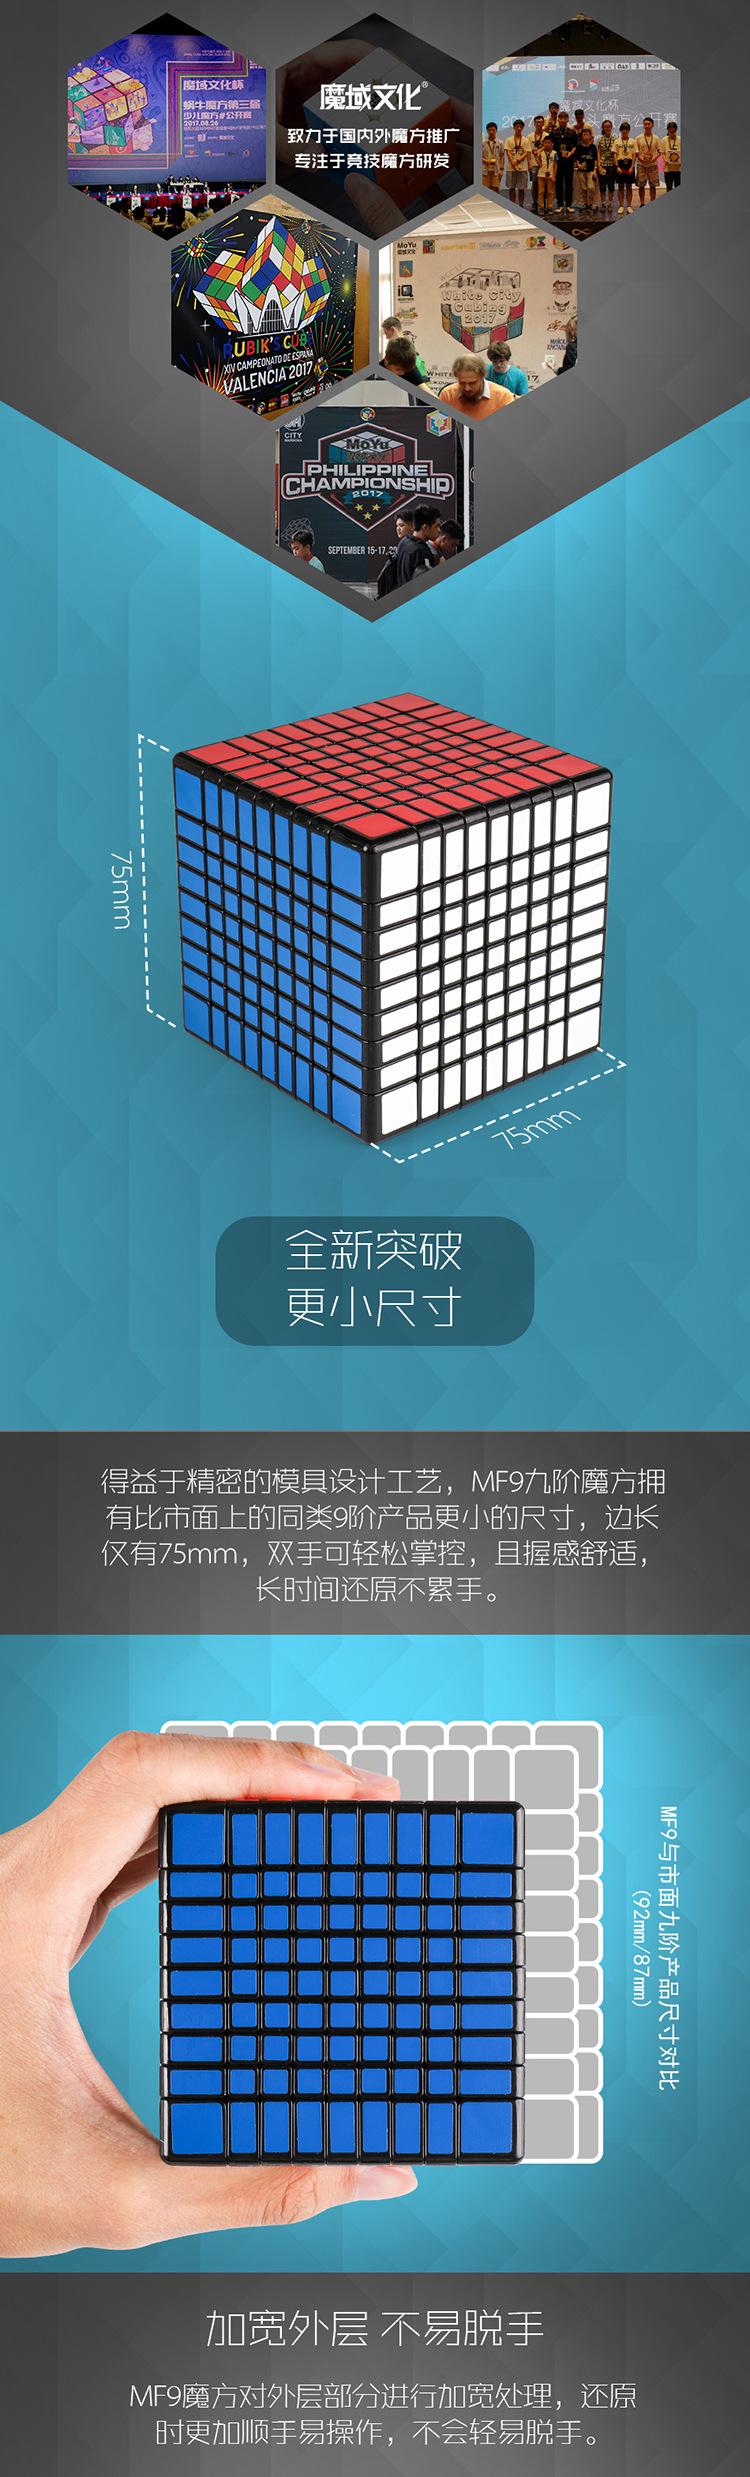 Rubik 9x9x9 Đồ chơi khối rubik ma thuật 9x9 chuyên dụng chất lượng cao